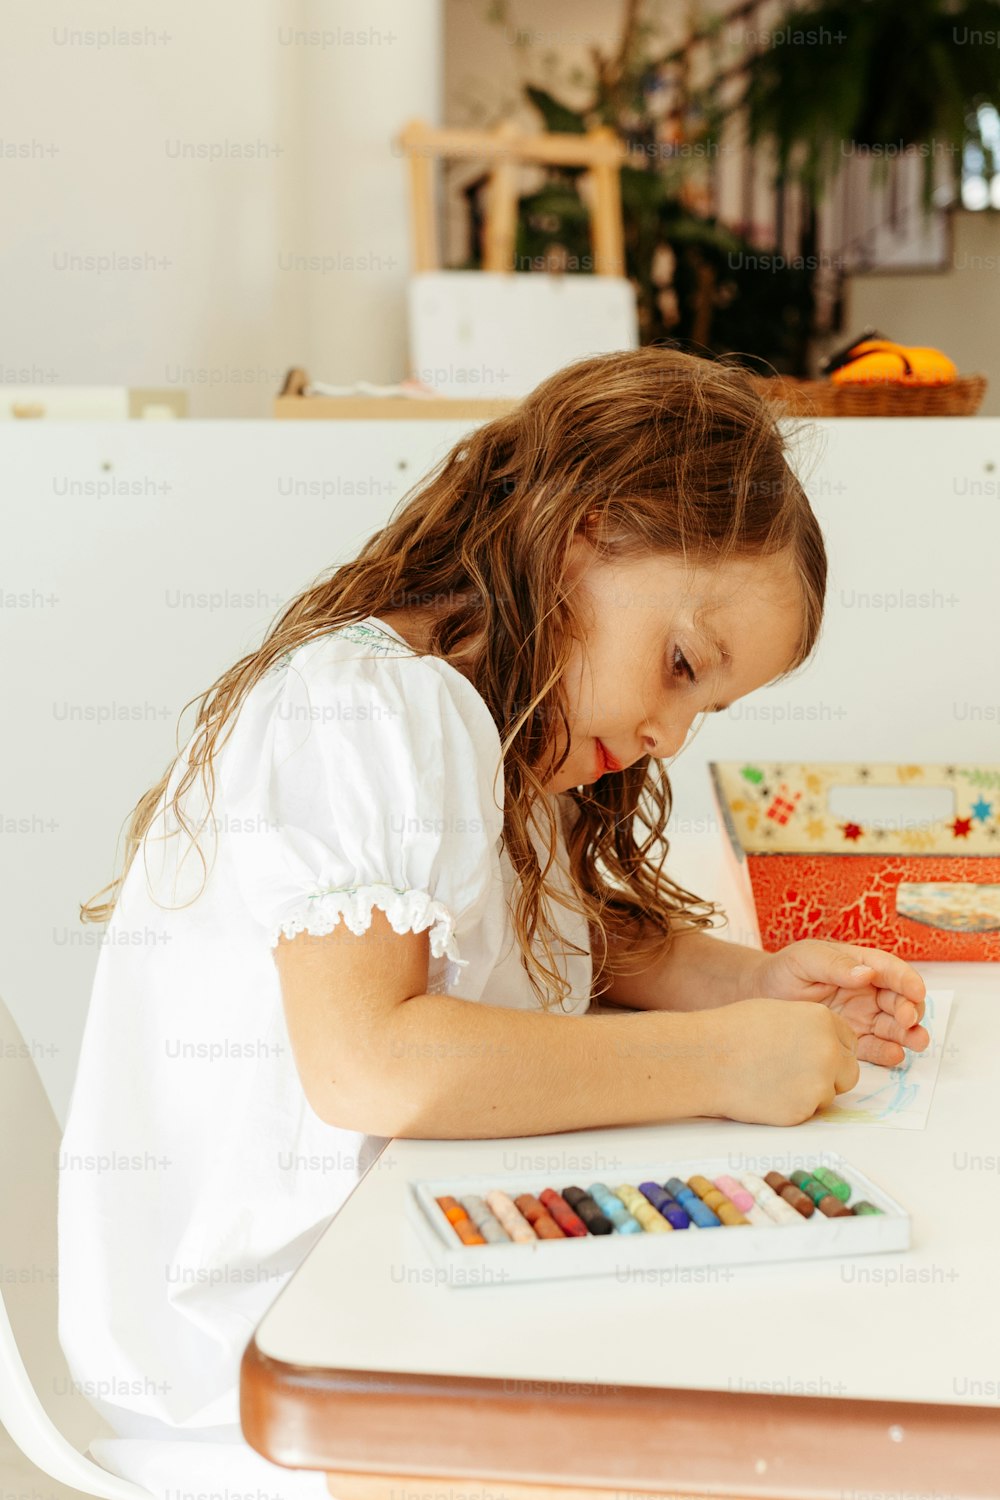 Ein kleines Mädchen, das mit einem Buch und ein paar Buntstiften an einem Tisch sitzt